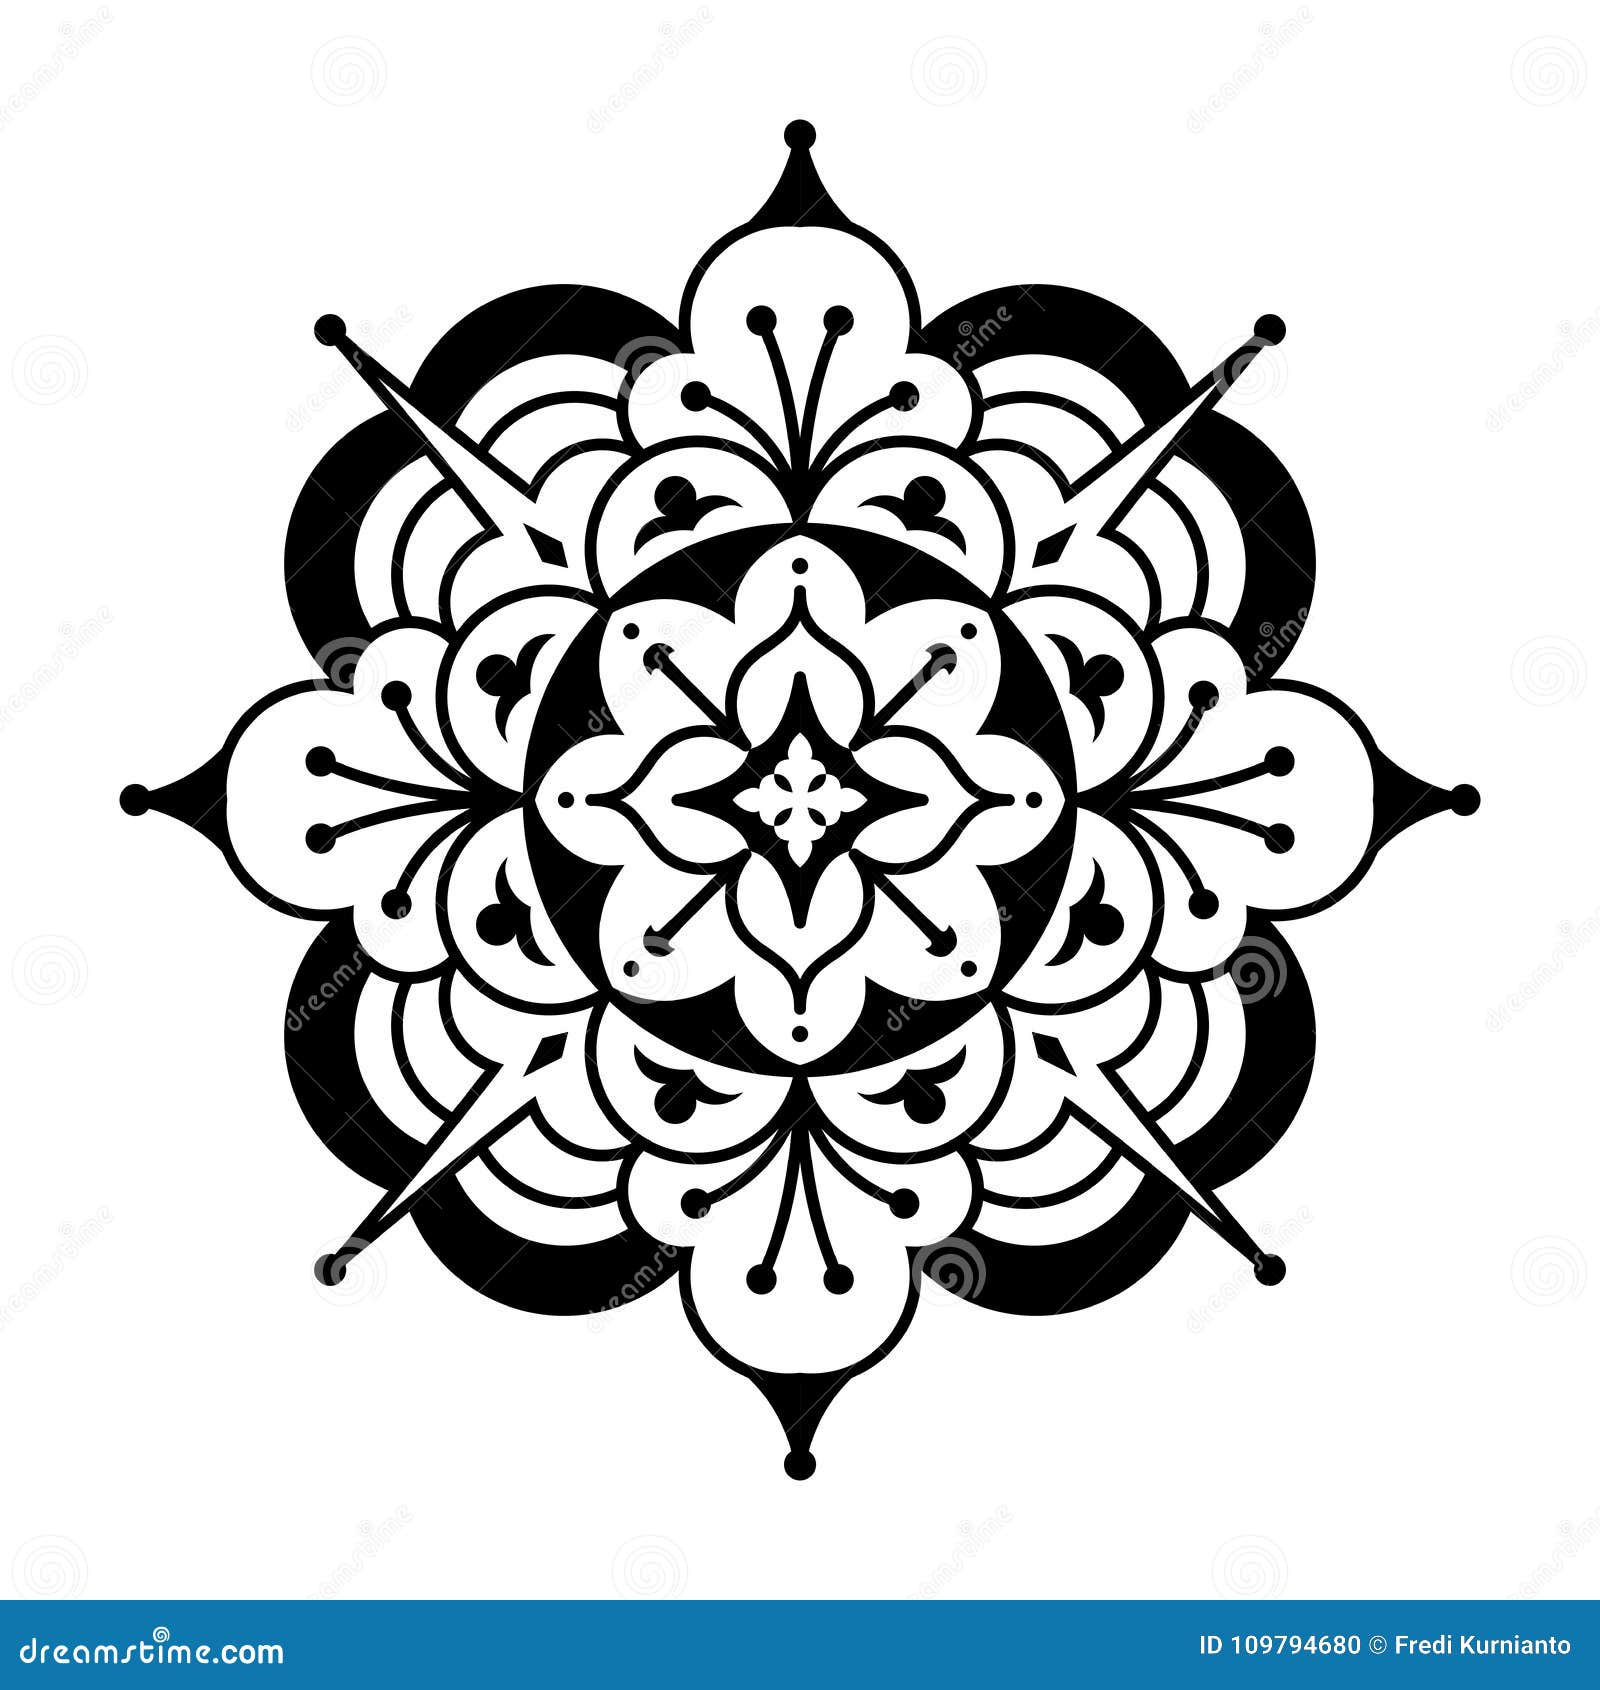 Arabesque Flower Stencil